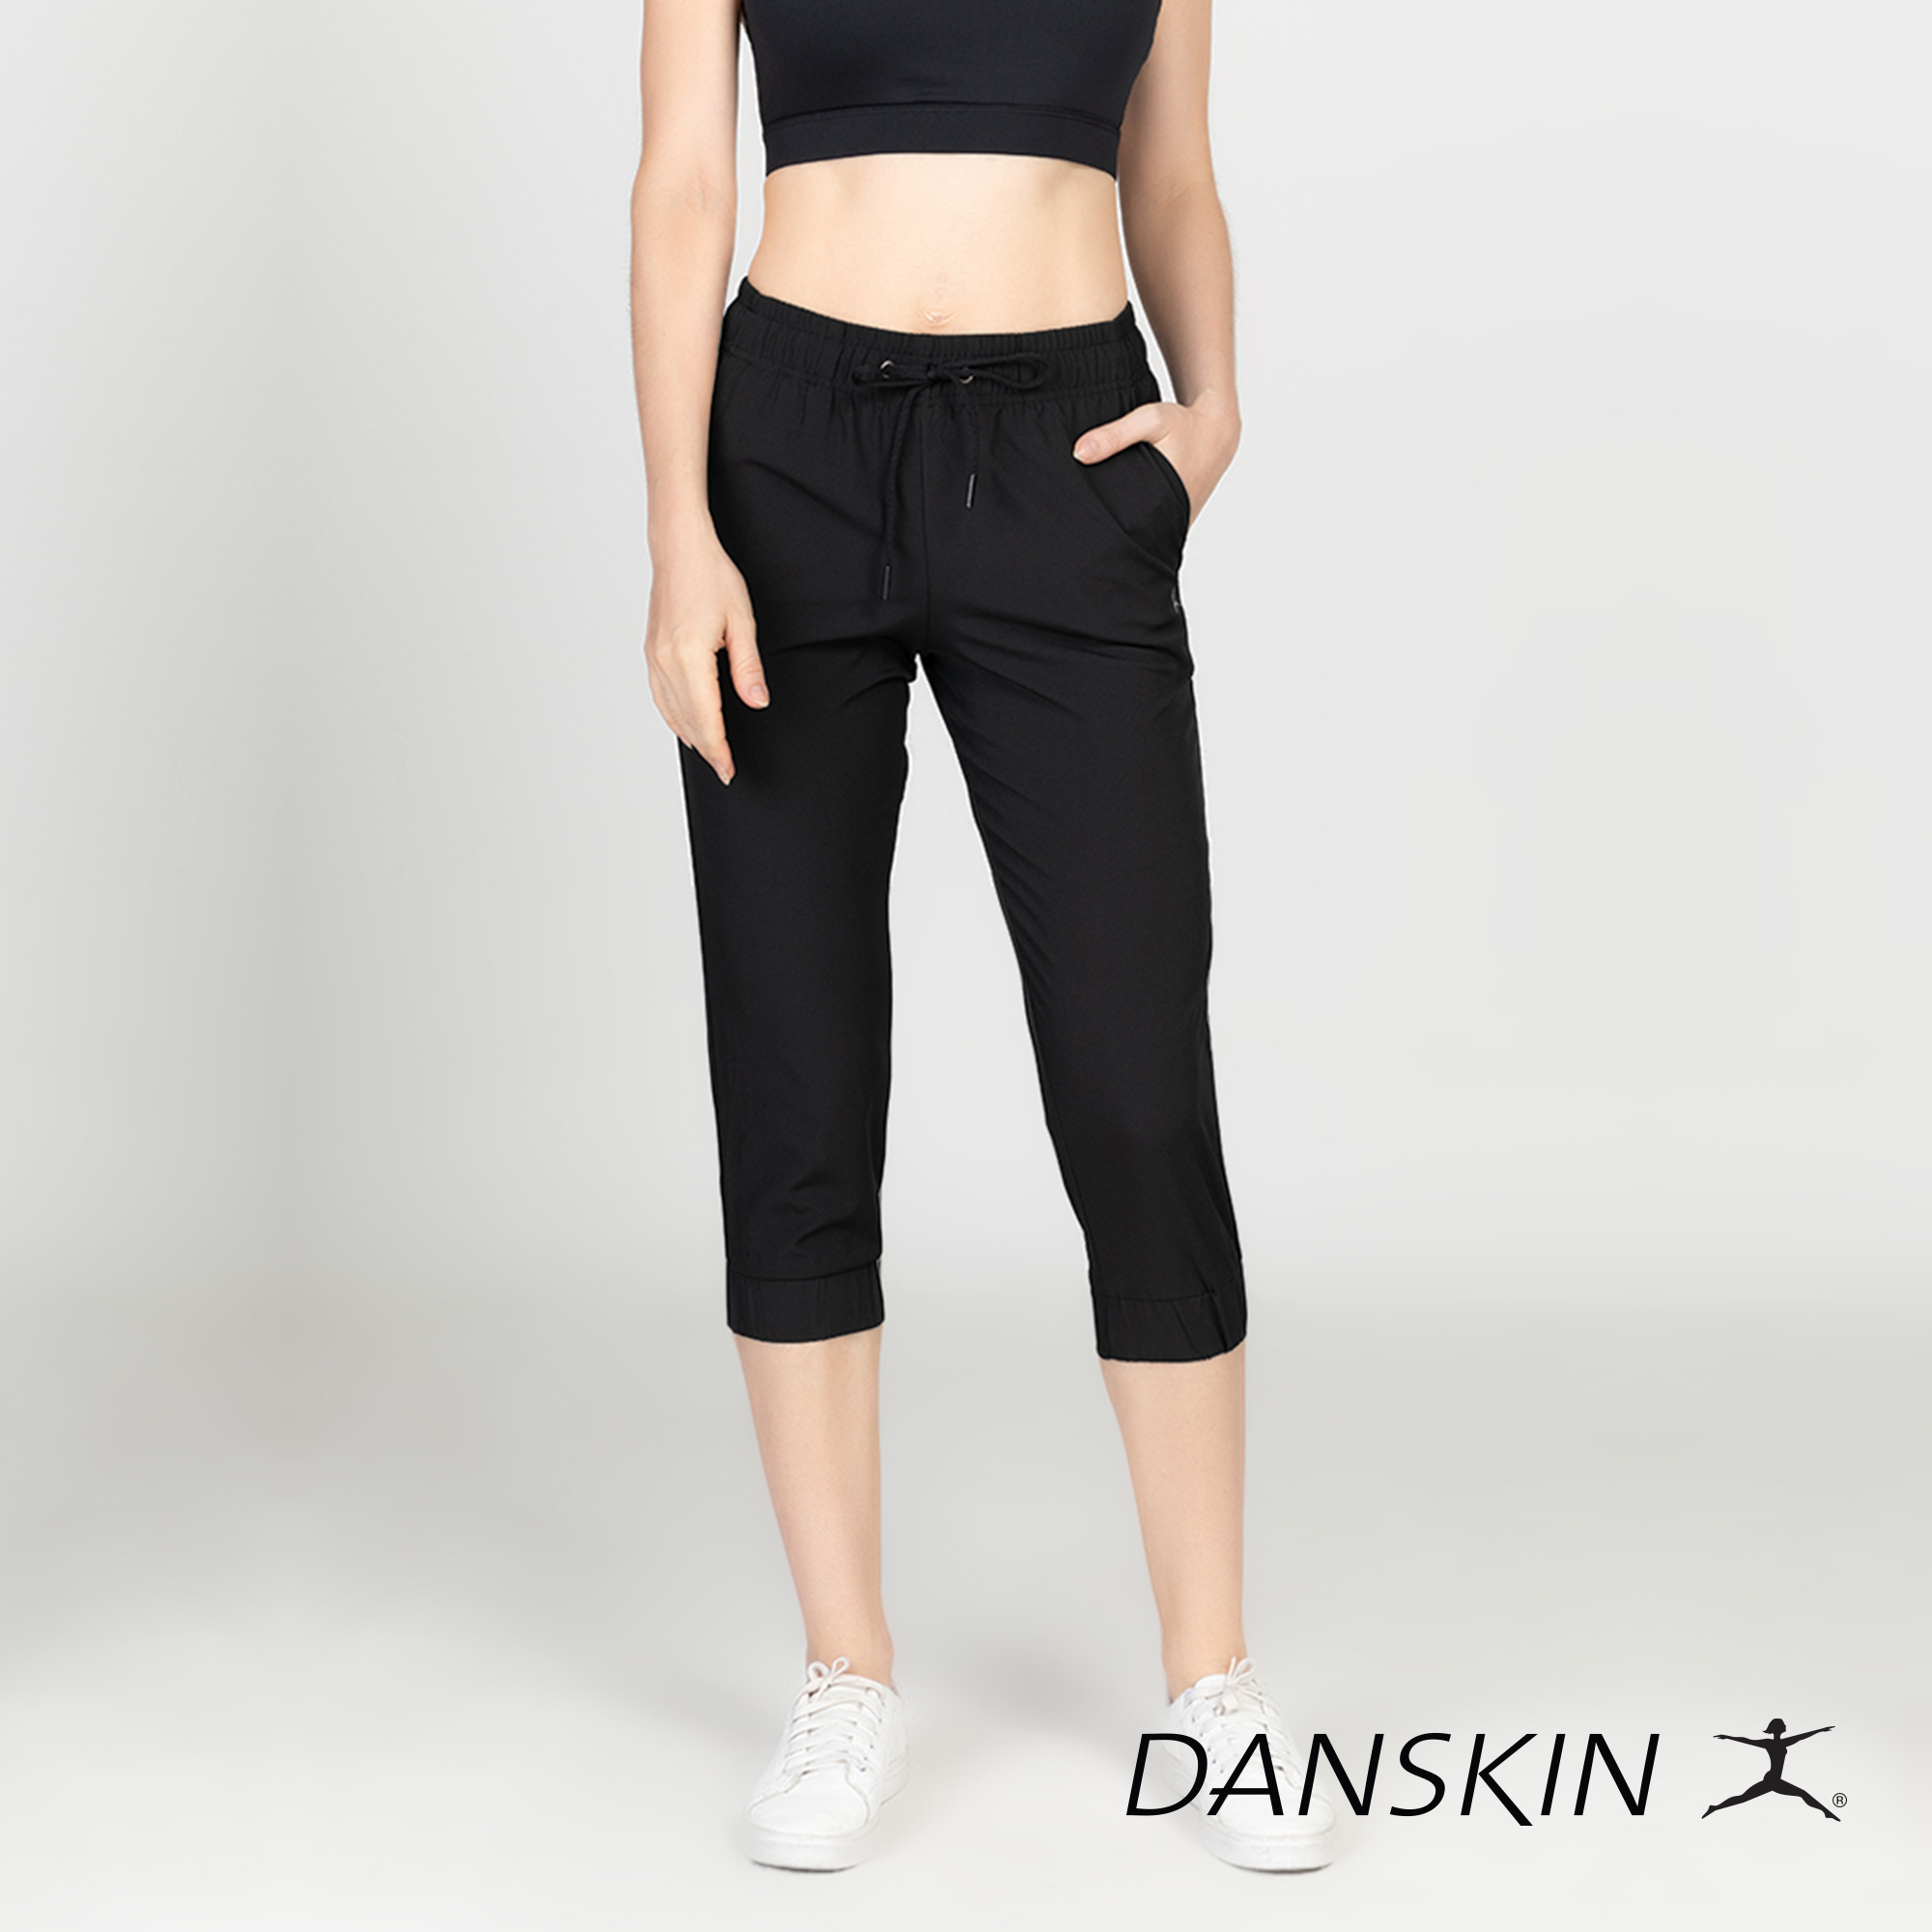 Danskin Black Body Fit Leggings w/ Hidden Back Pocket for Workout Gym  Sports Wear Athleisure Women Activewear